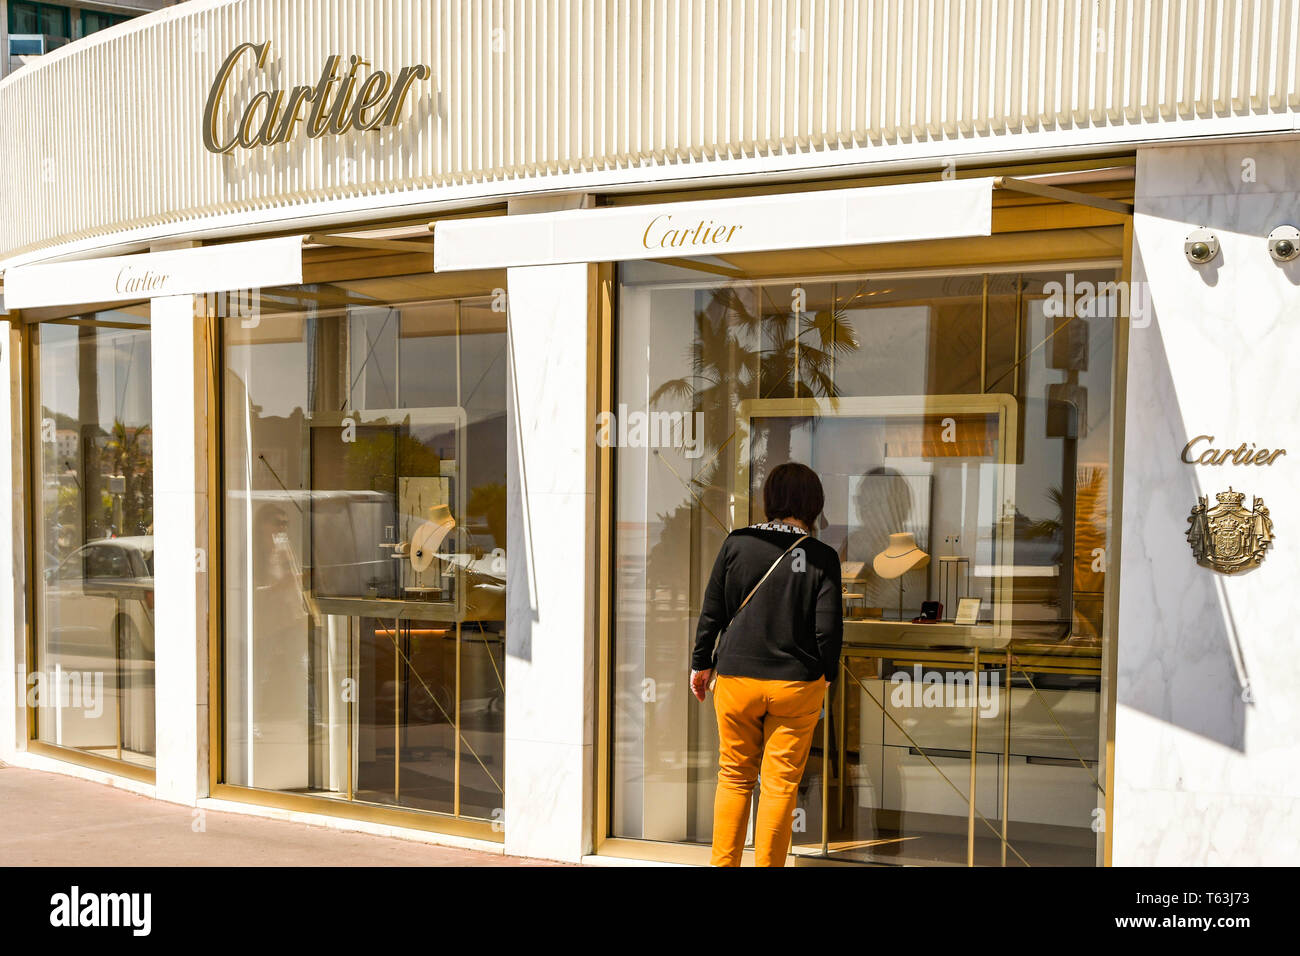 cartier retailers canada